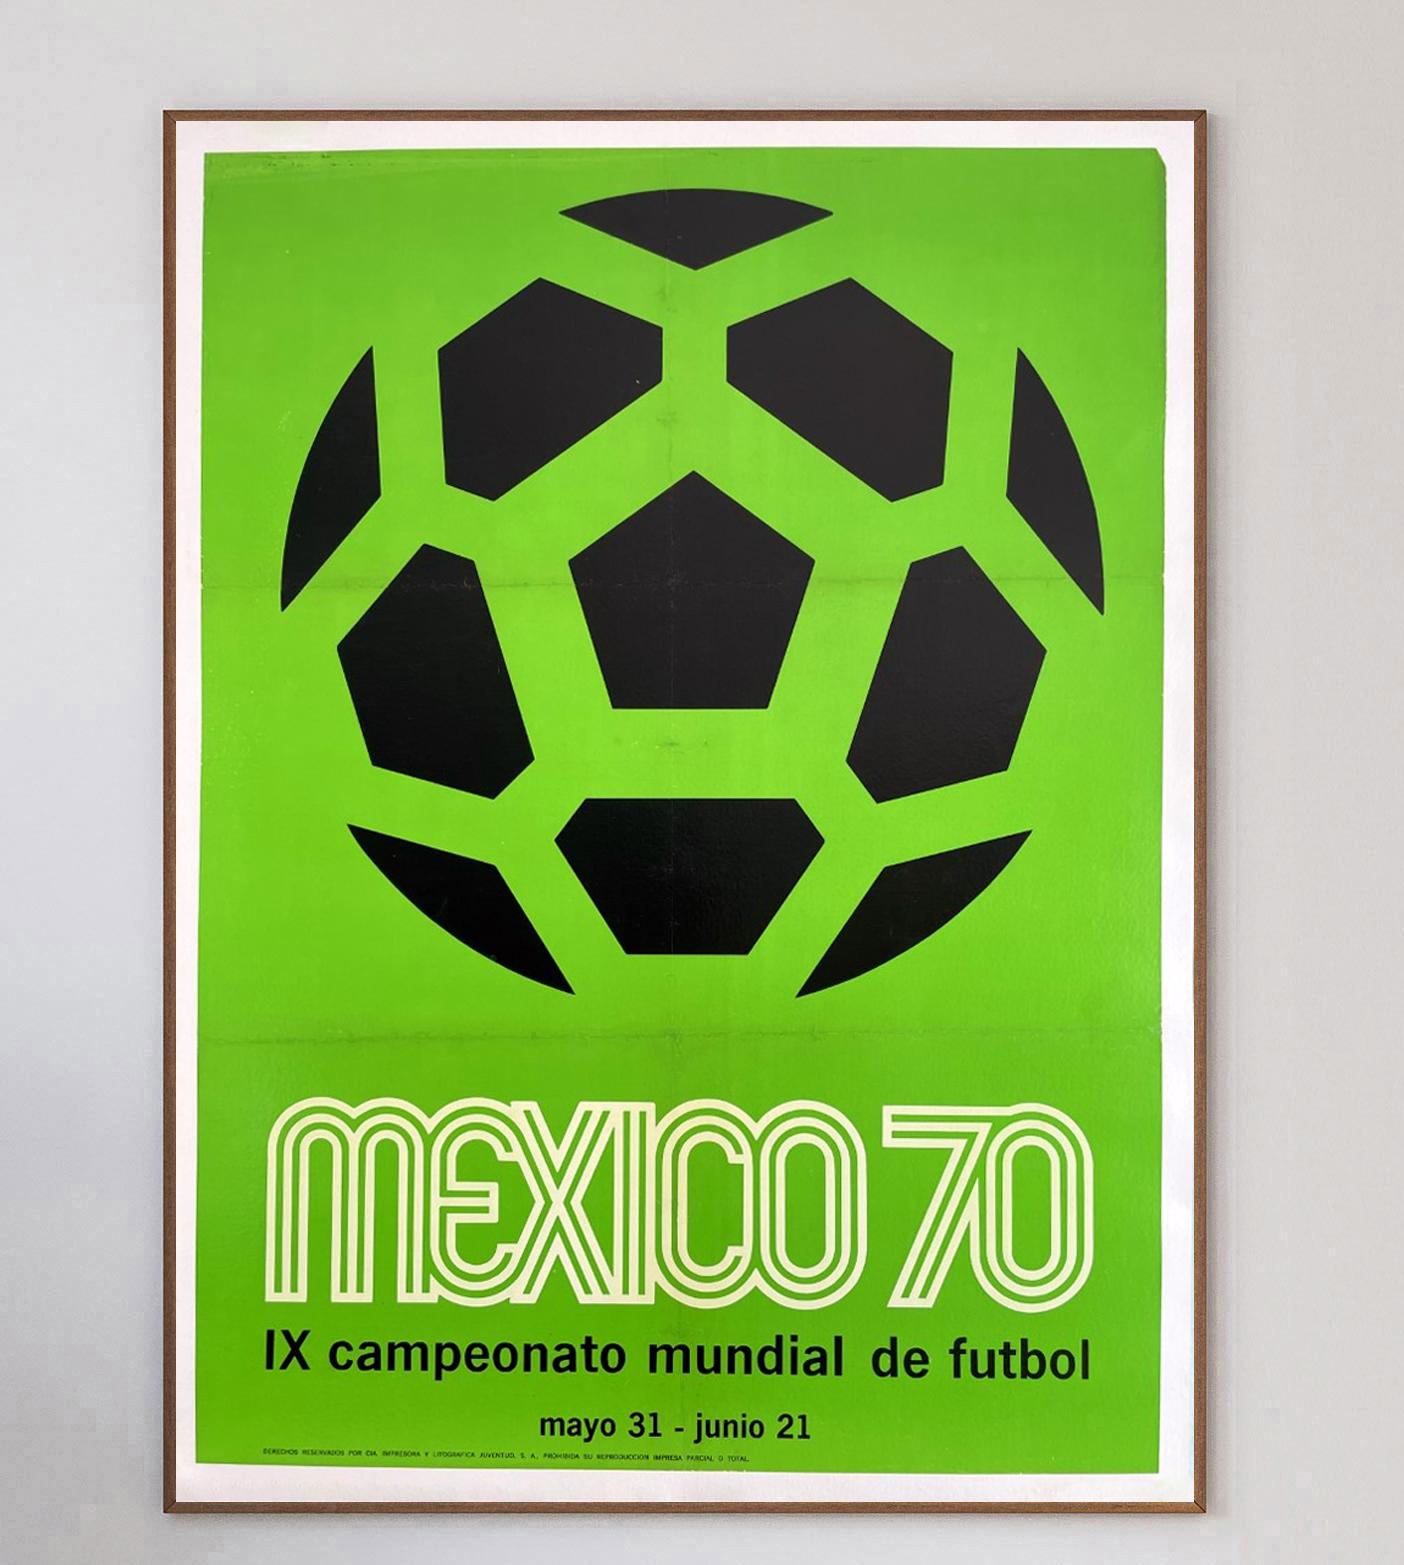 La Coupe du Monde de la FIFA 1970 a été organisée par le Mexique du 31 mai au 21 juin. Il s'agissait de la 9ème édition de l'événement quadriennal. Il s'agissait du premier événement organisé en Amérique du Nord et il a connu un énorme succès, les